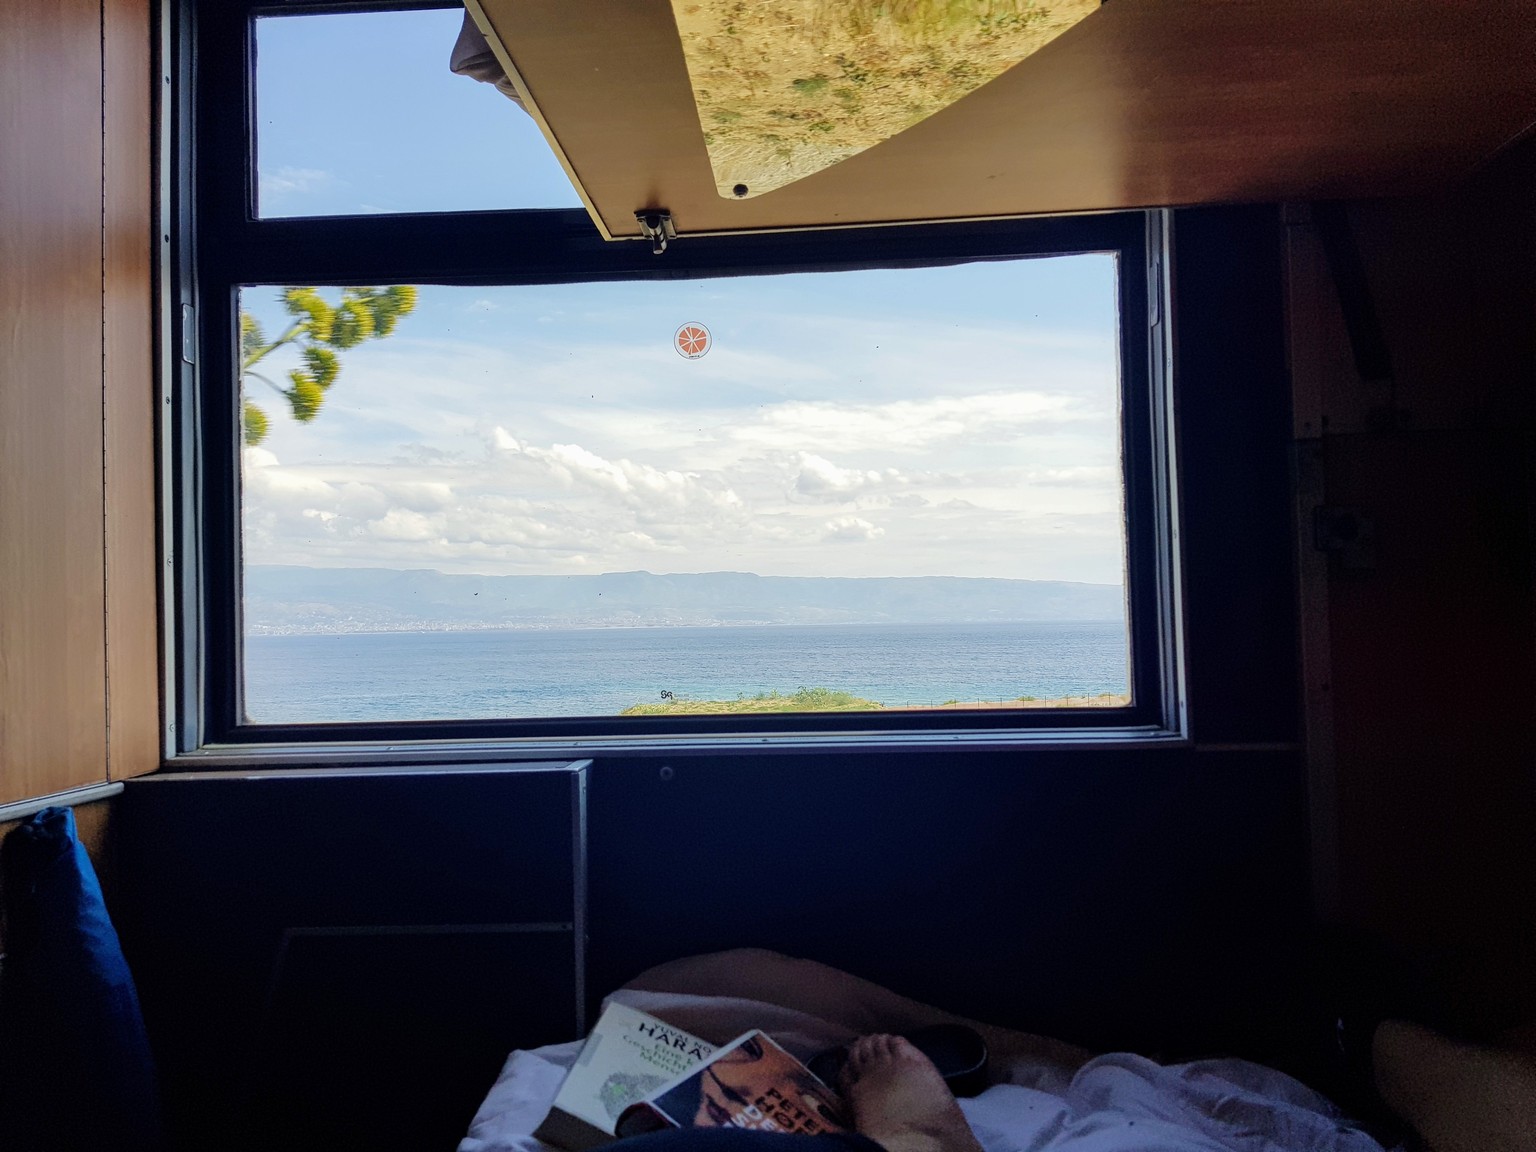 Die Fahrt nach Sizilien dauert rund 20 Stunden, dafür geniesst man die Aussicht vom Bett direkt aufs Meer.